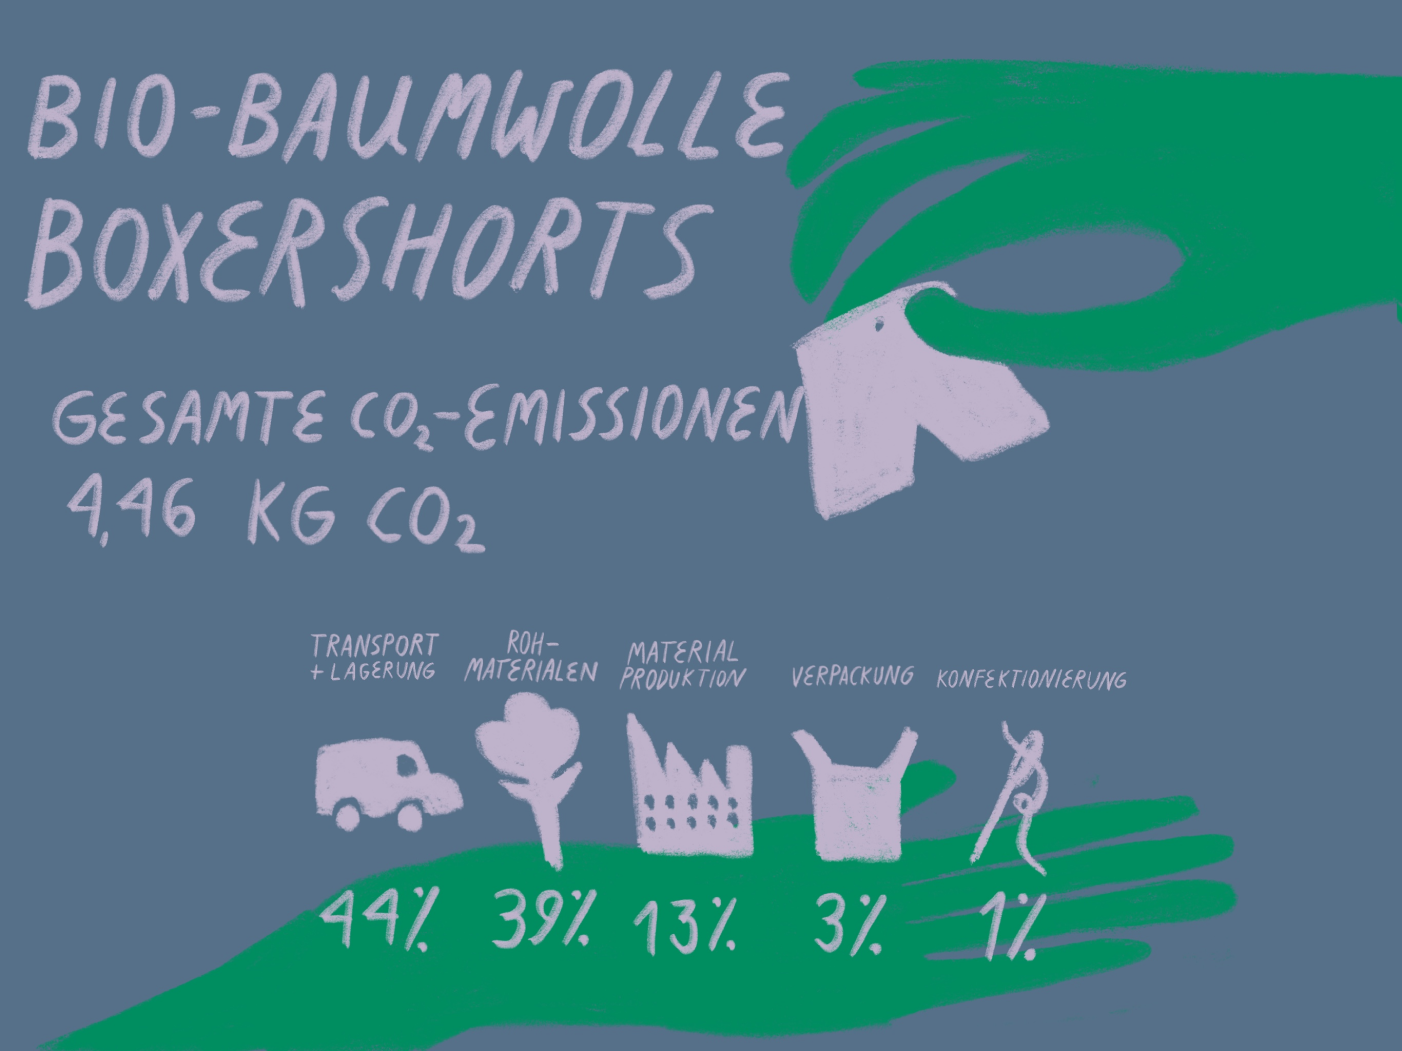 OC Boxers emissions. Organic basics